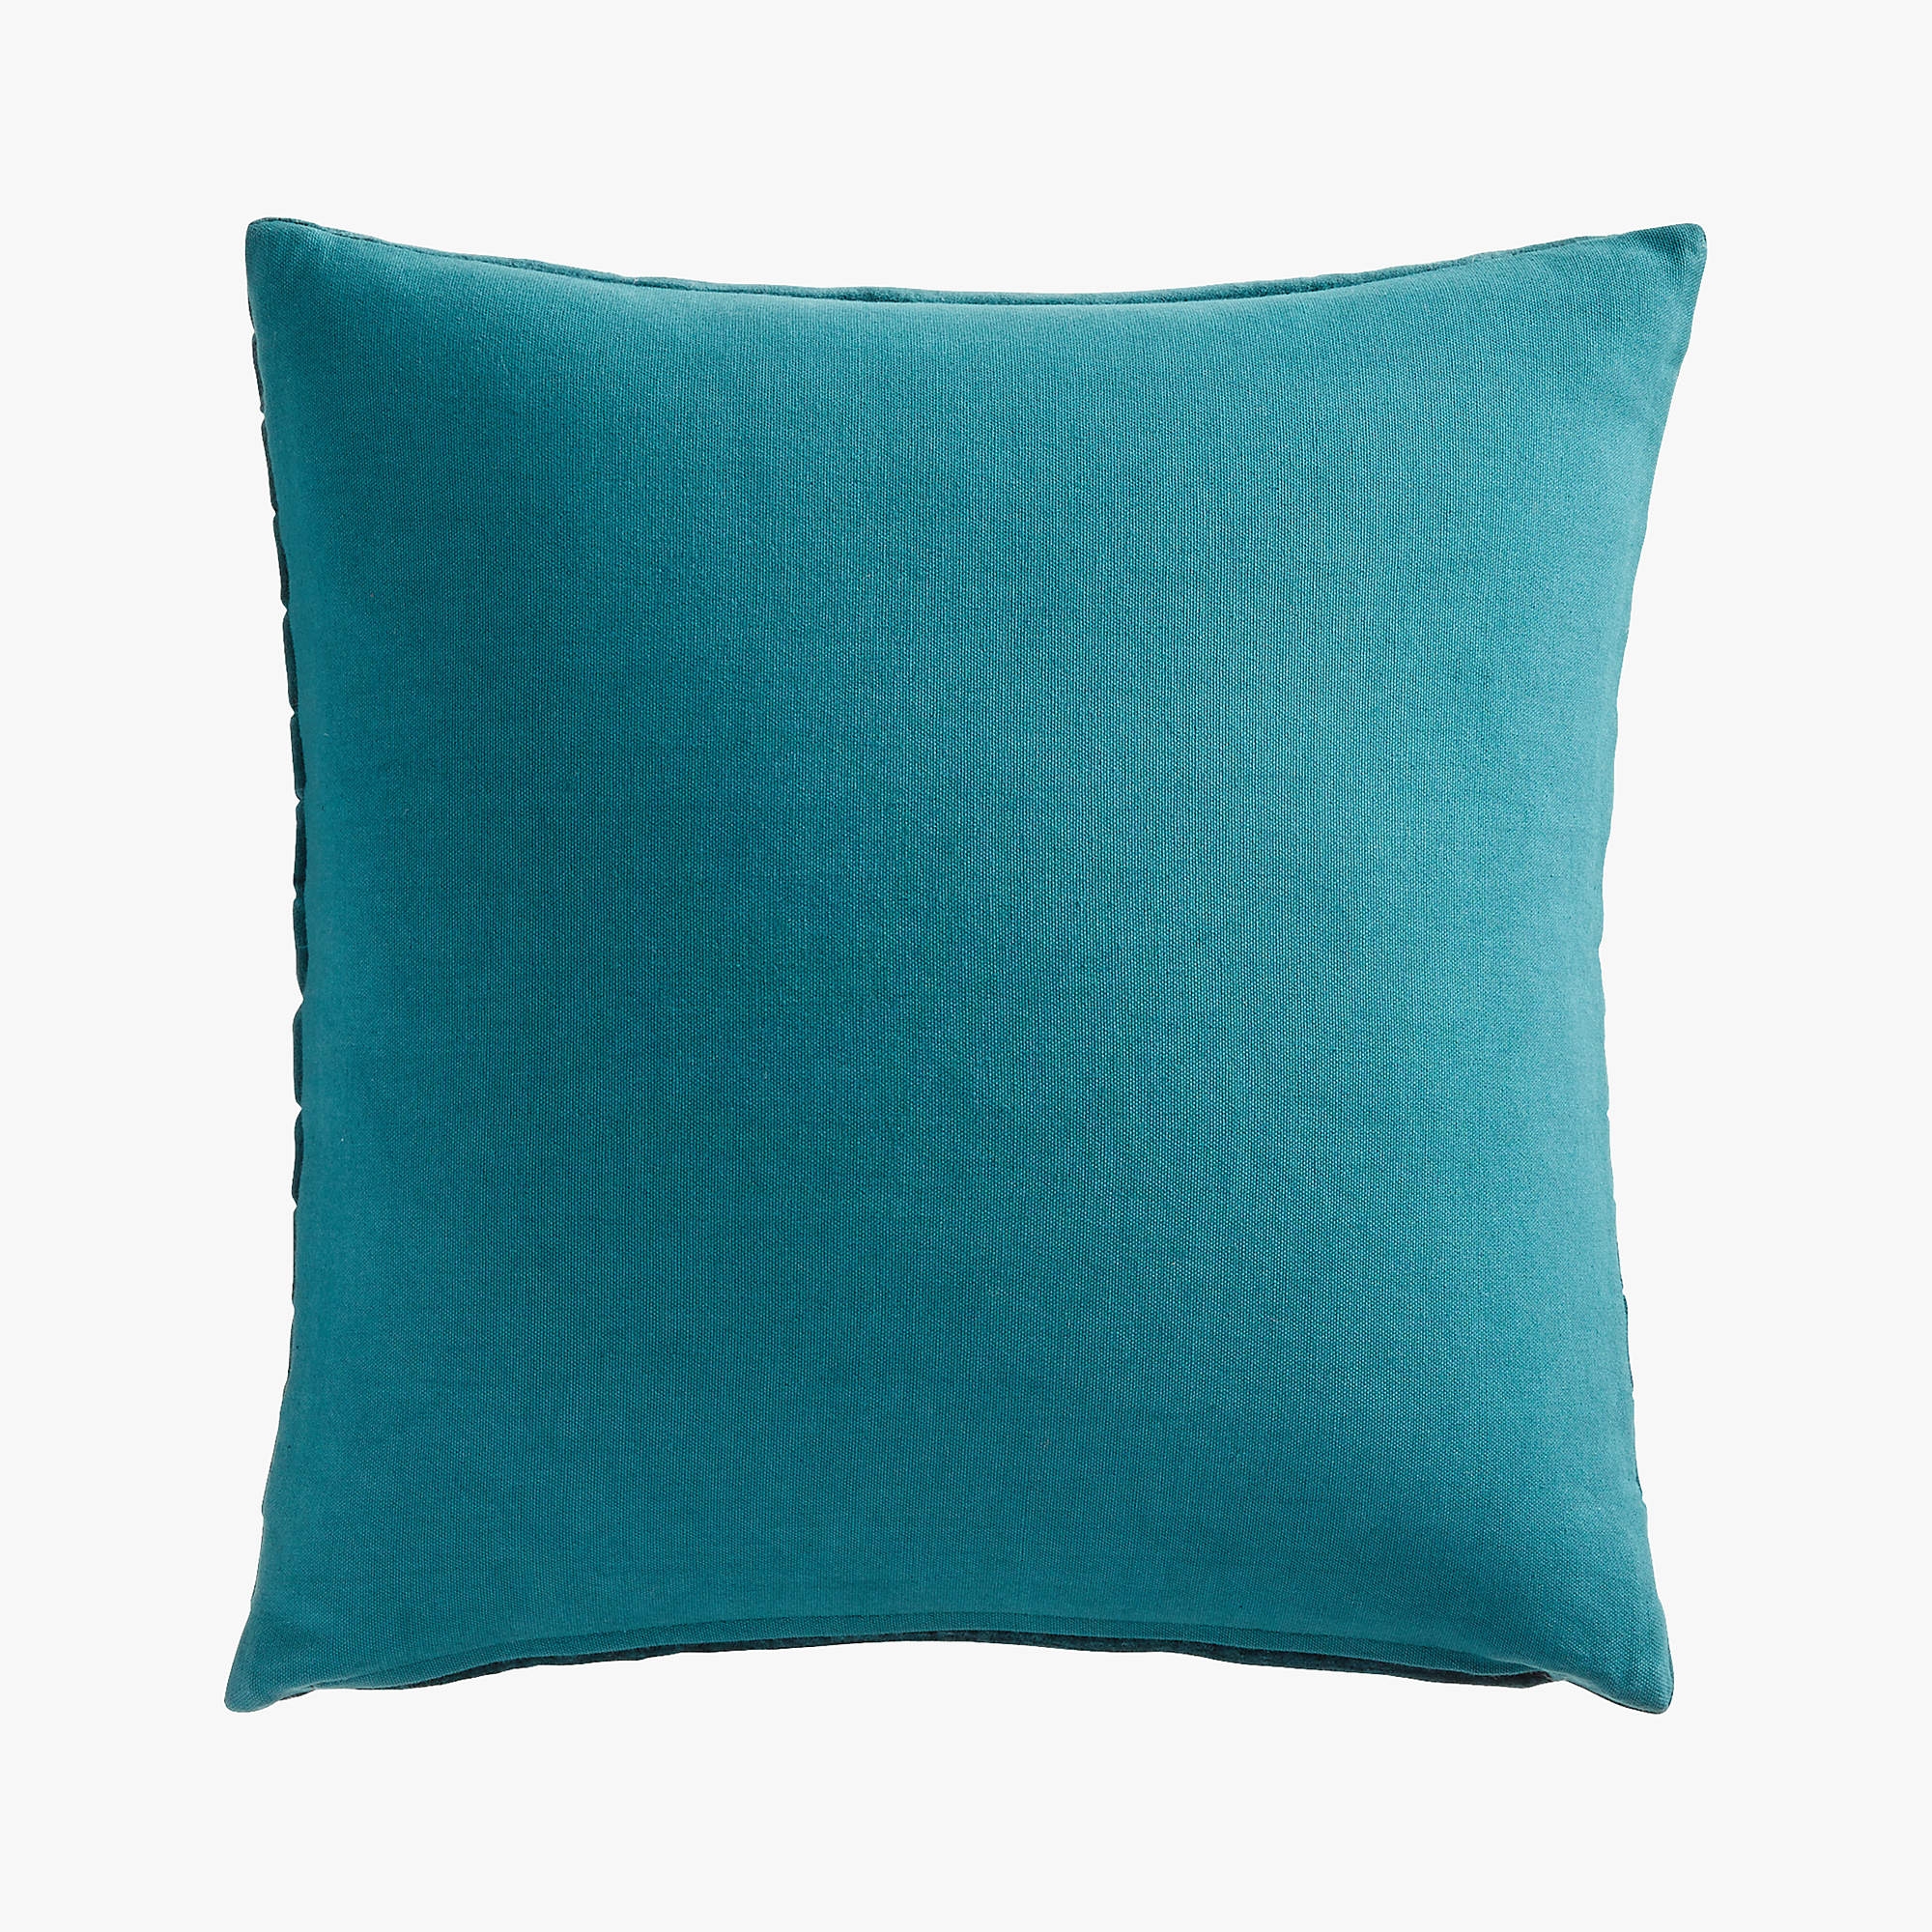 Channeled Teal Velvet Pillow, 18" x 18" - Image 2